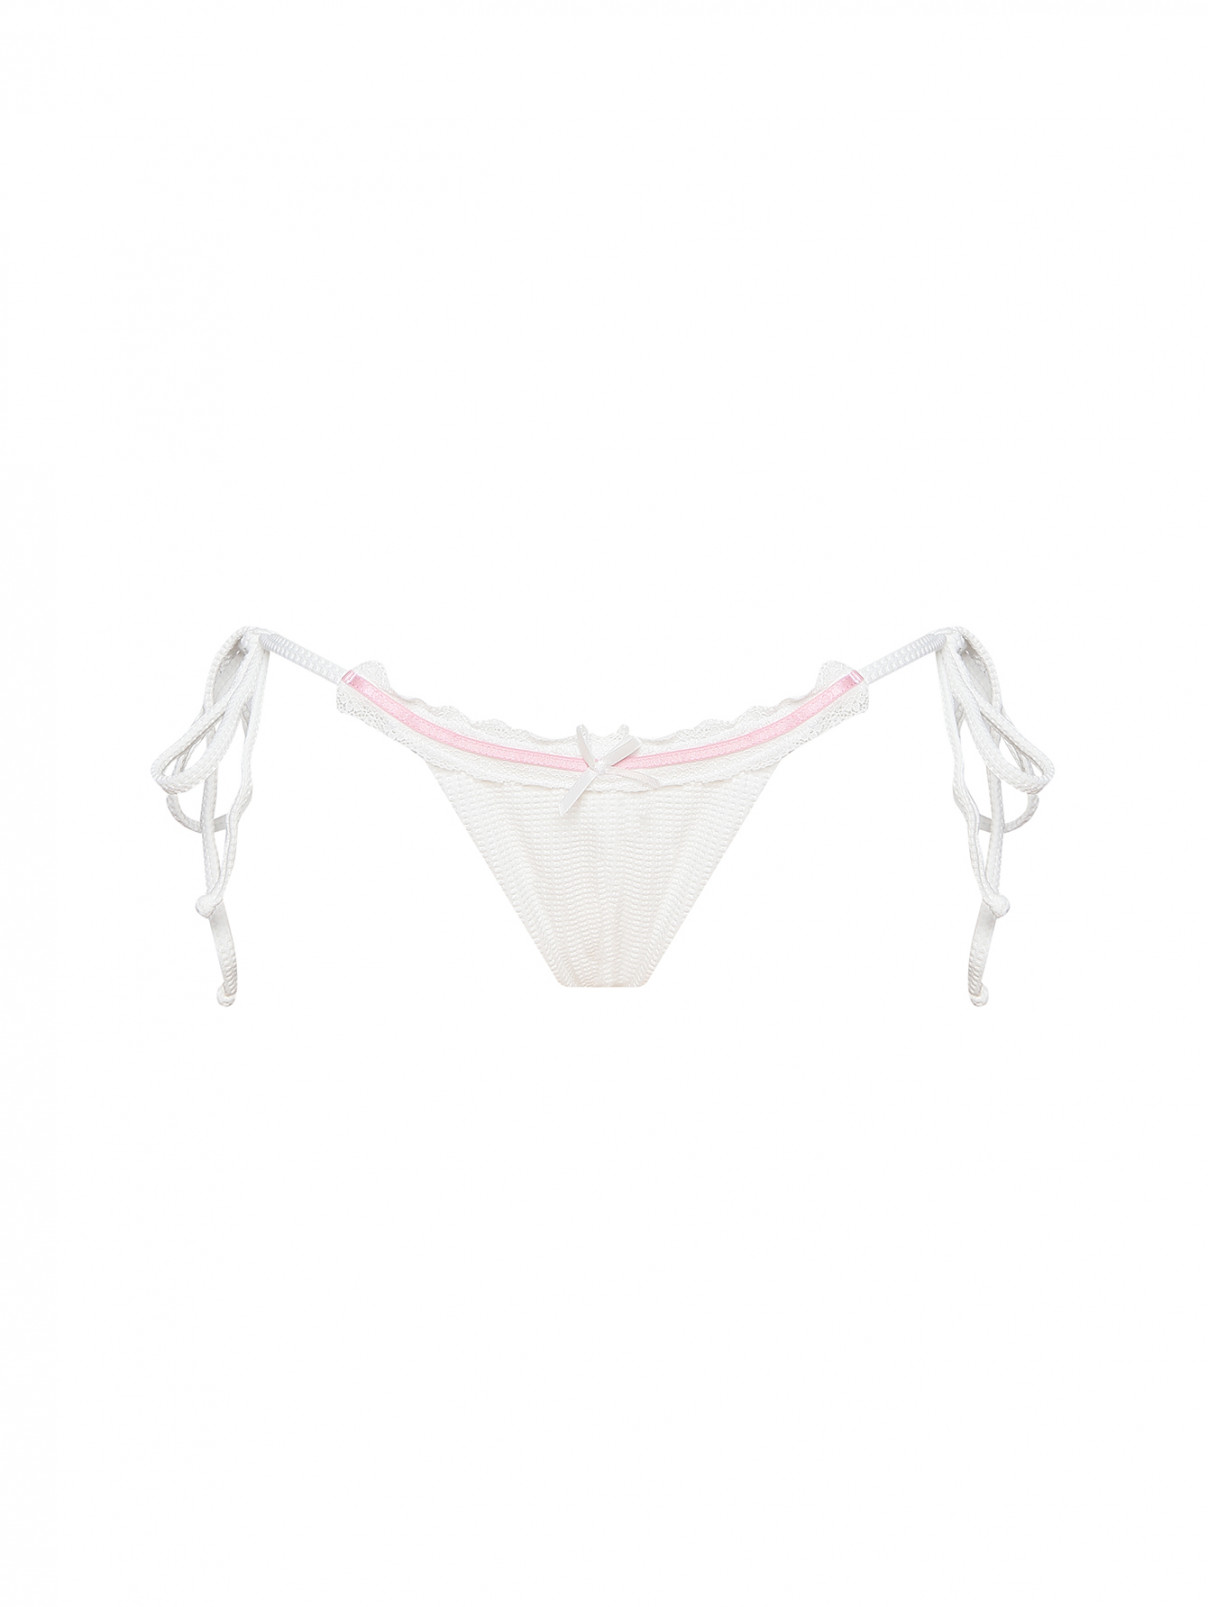 Купальник низ с кружевной отделкой Frankies Bikinis  –  Общий вид  – Цвет:  Белый